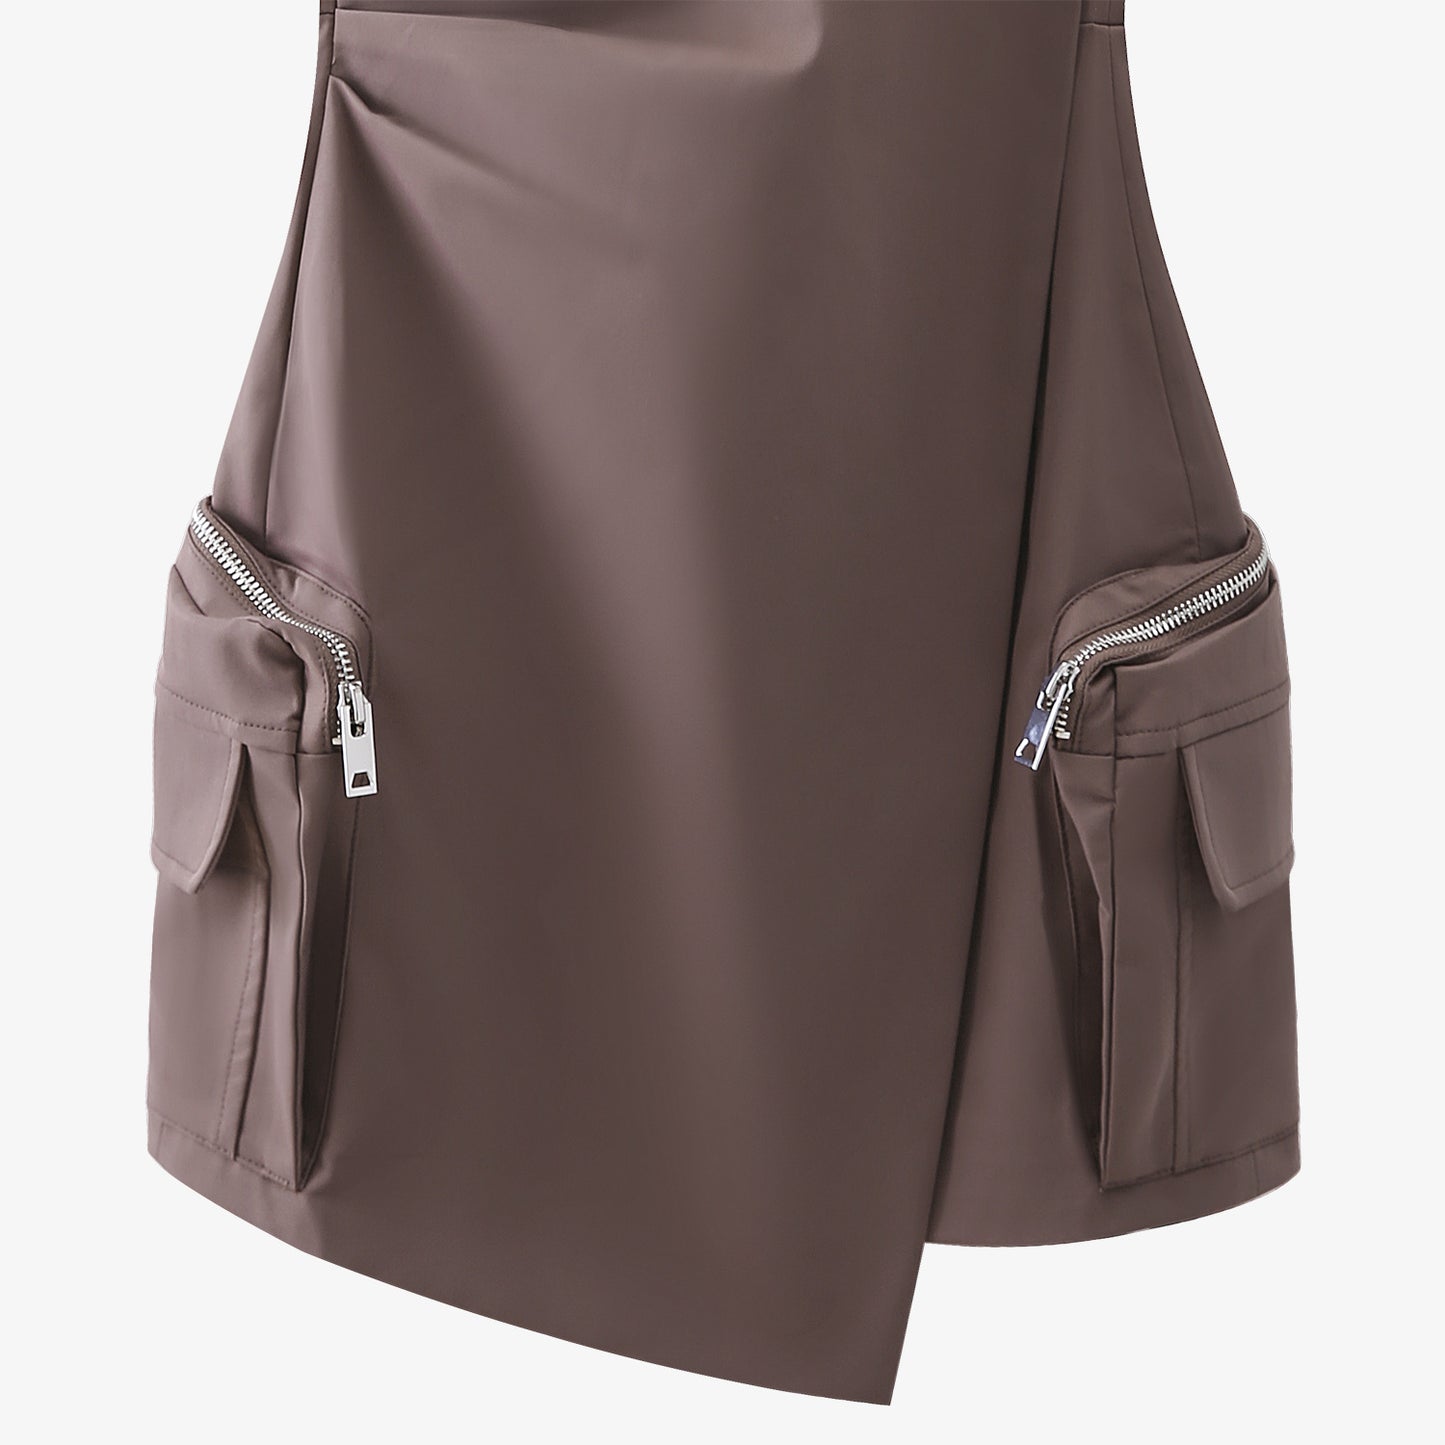 Women's summer hip skirt